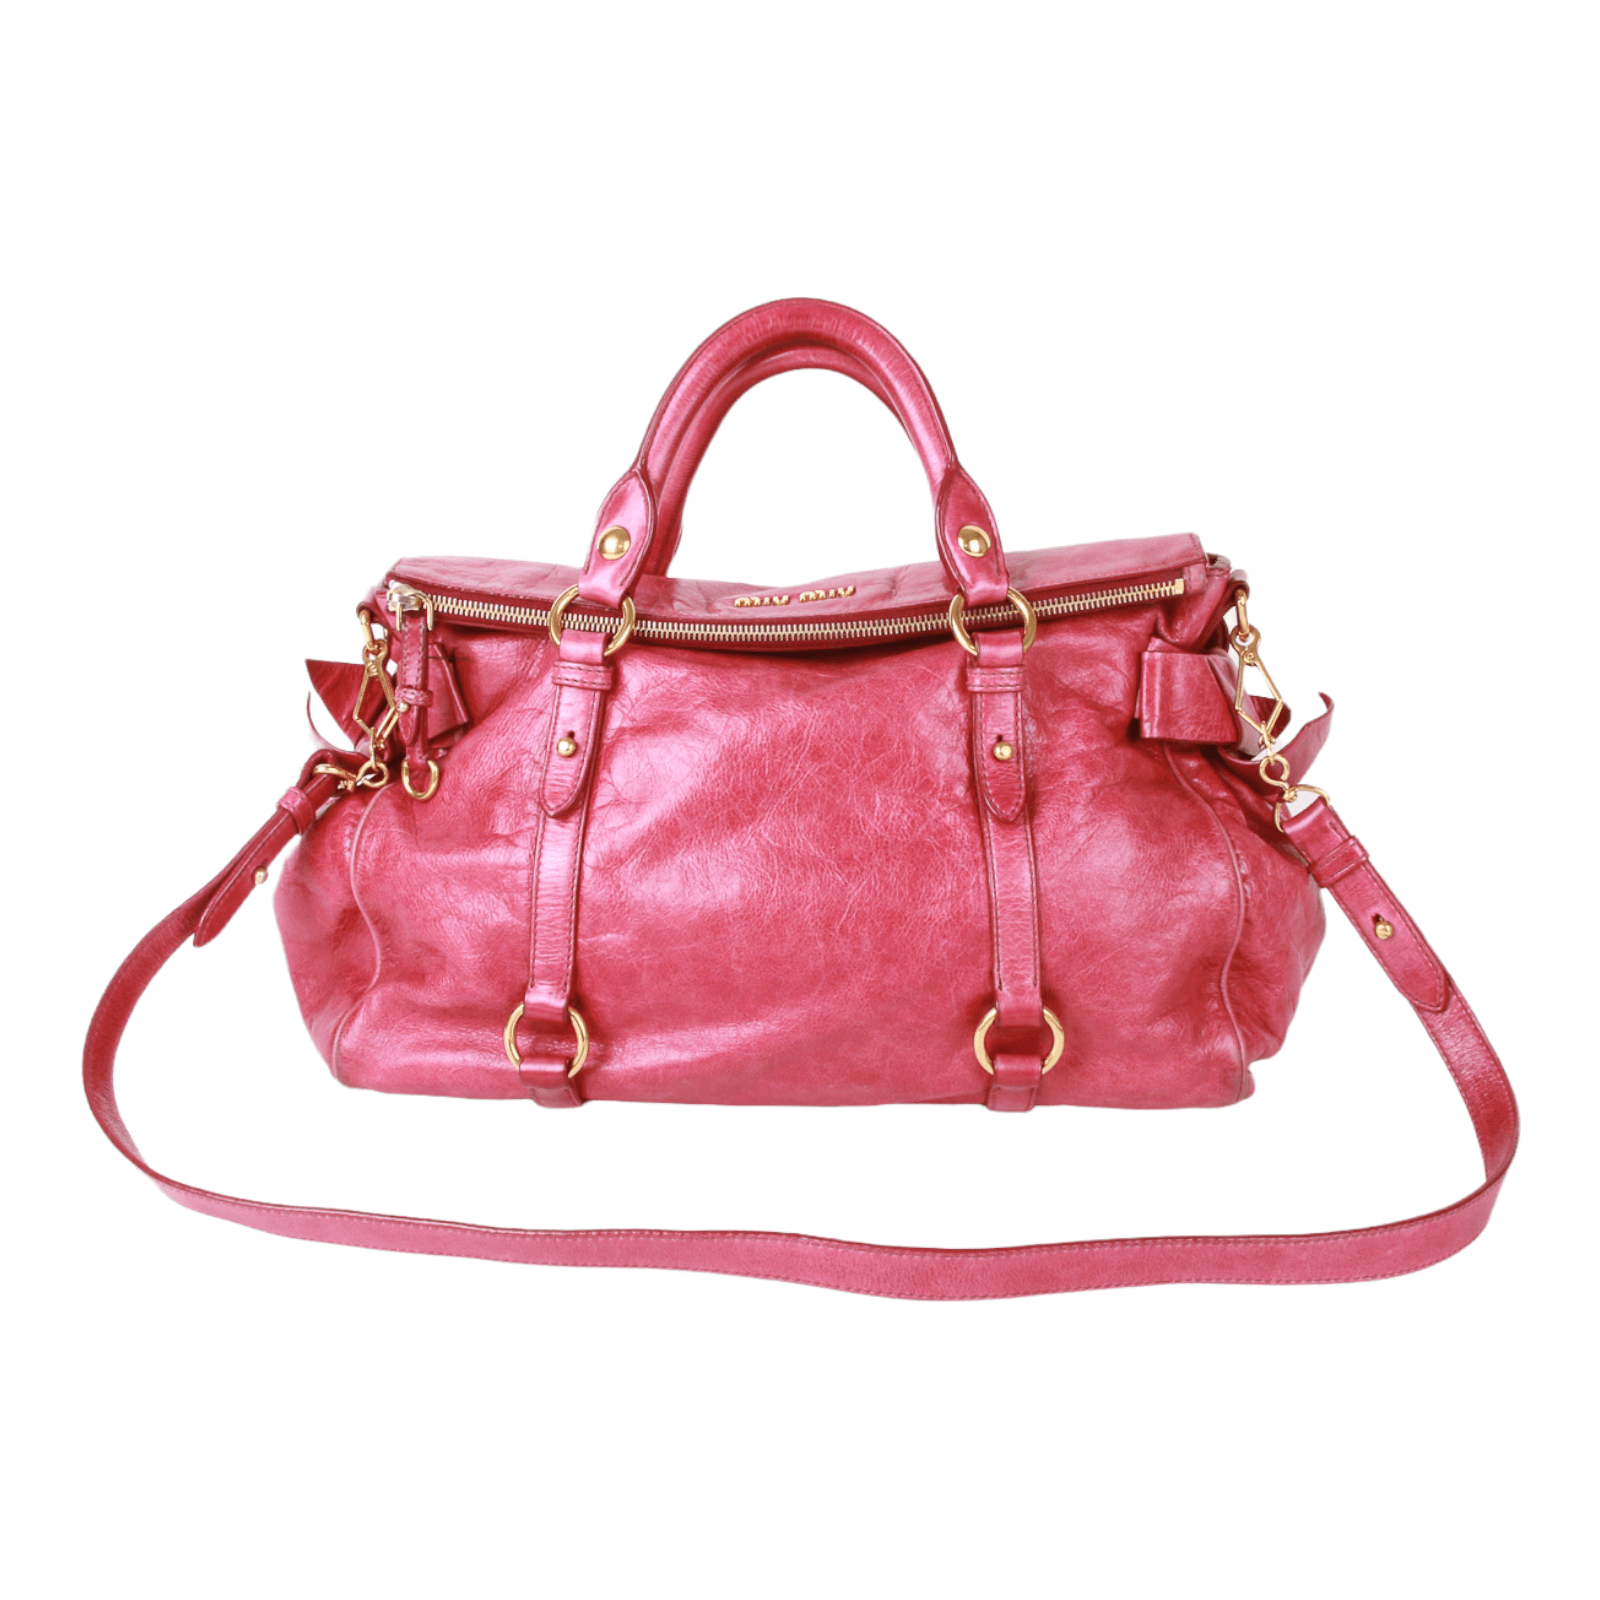 Miu Miu 2 way handbag with strap  Miu miu, Miu miu bag, Leather